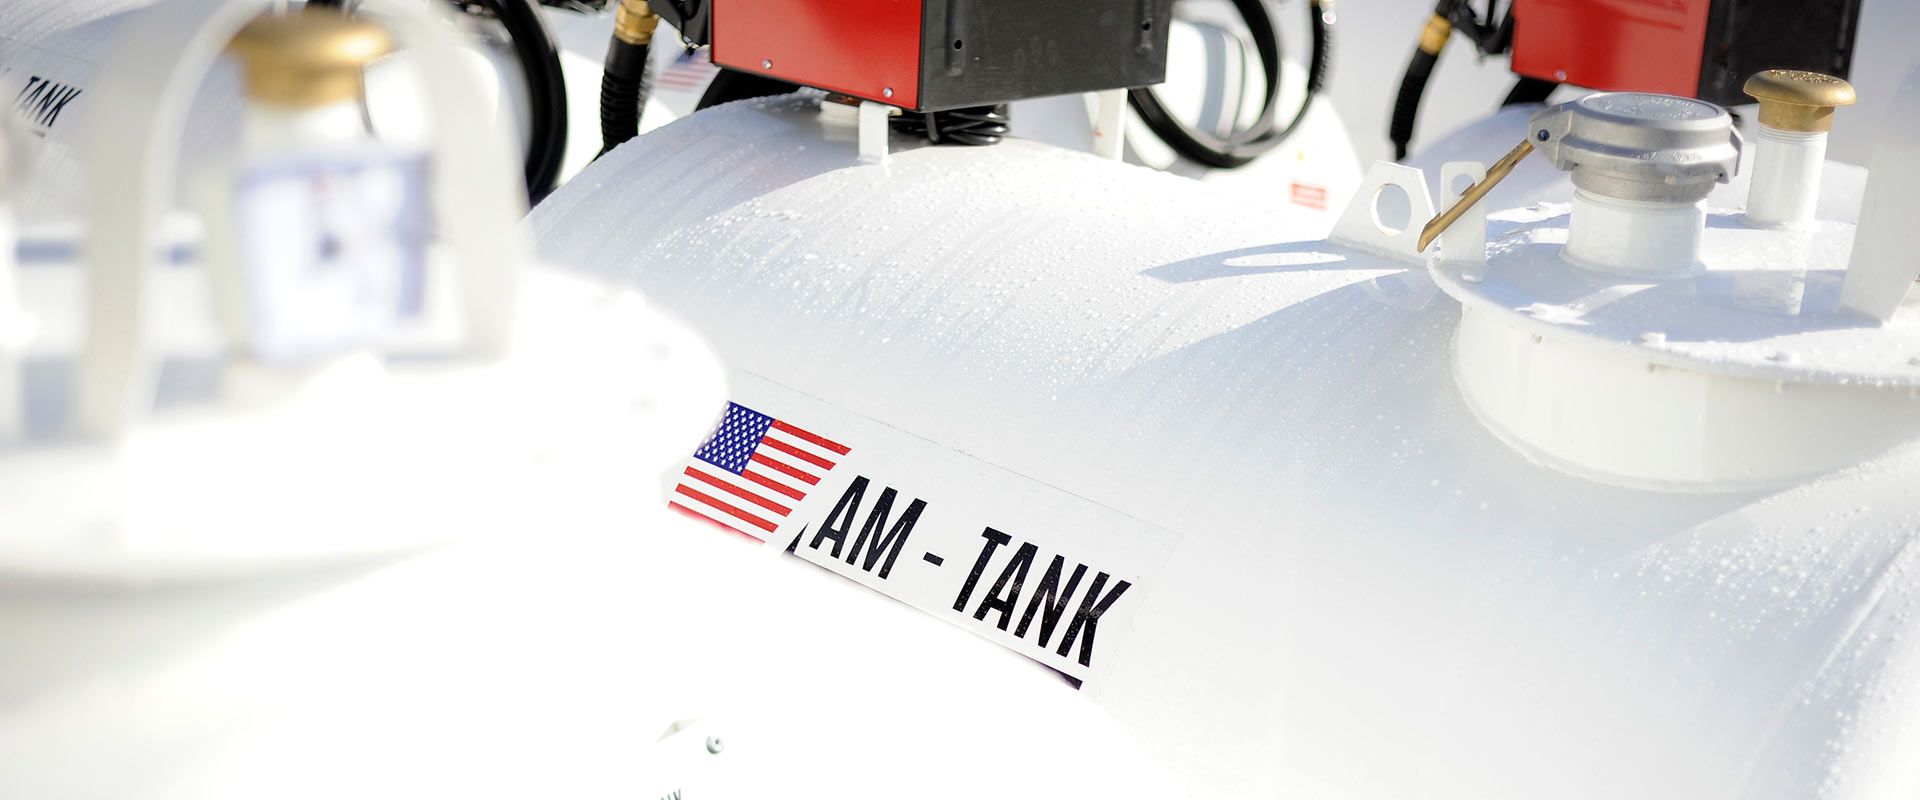 AM Tank